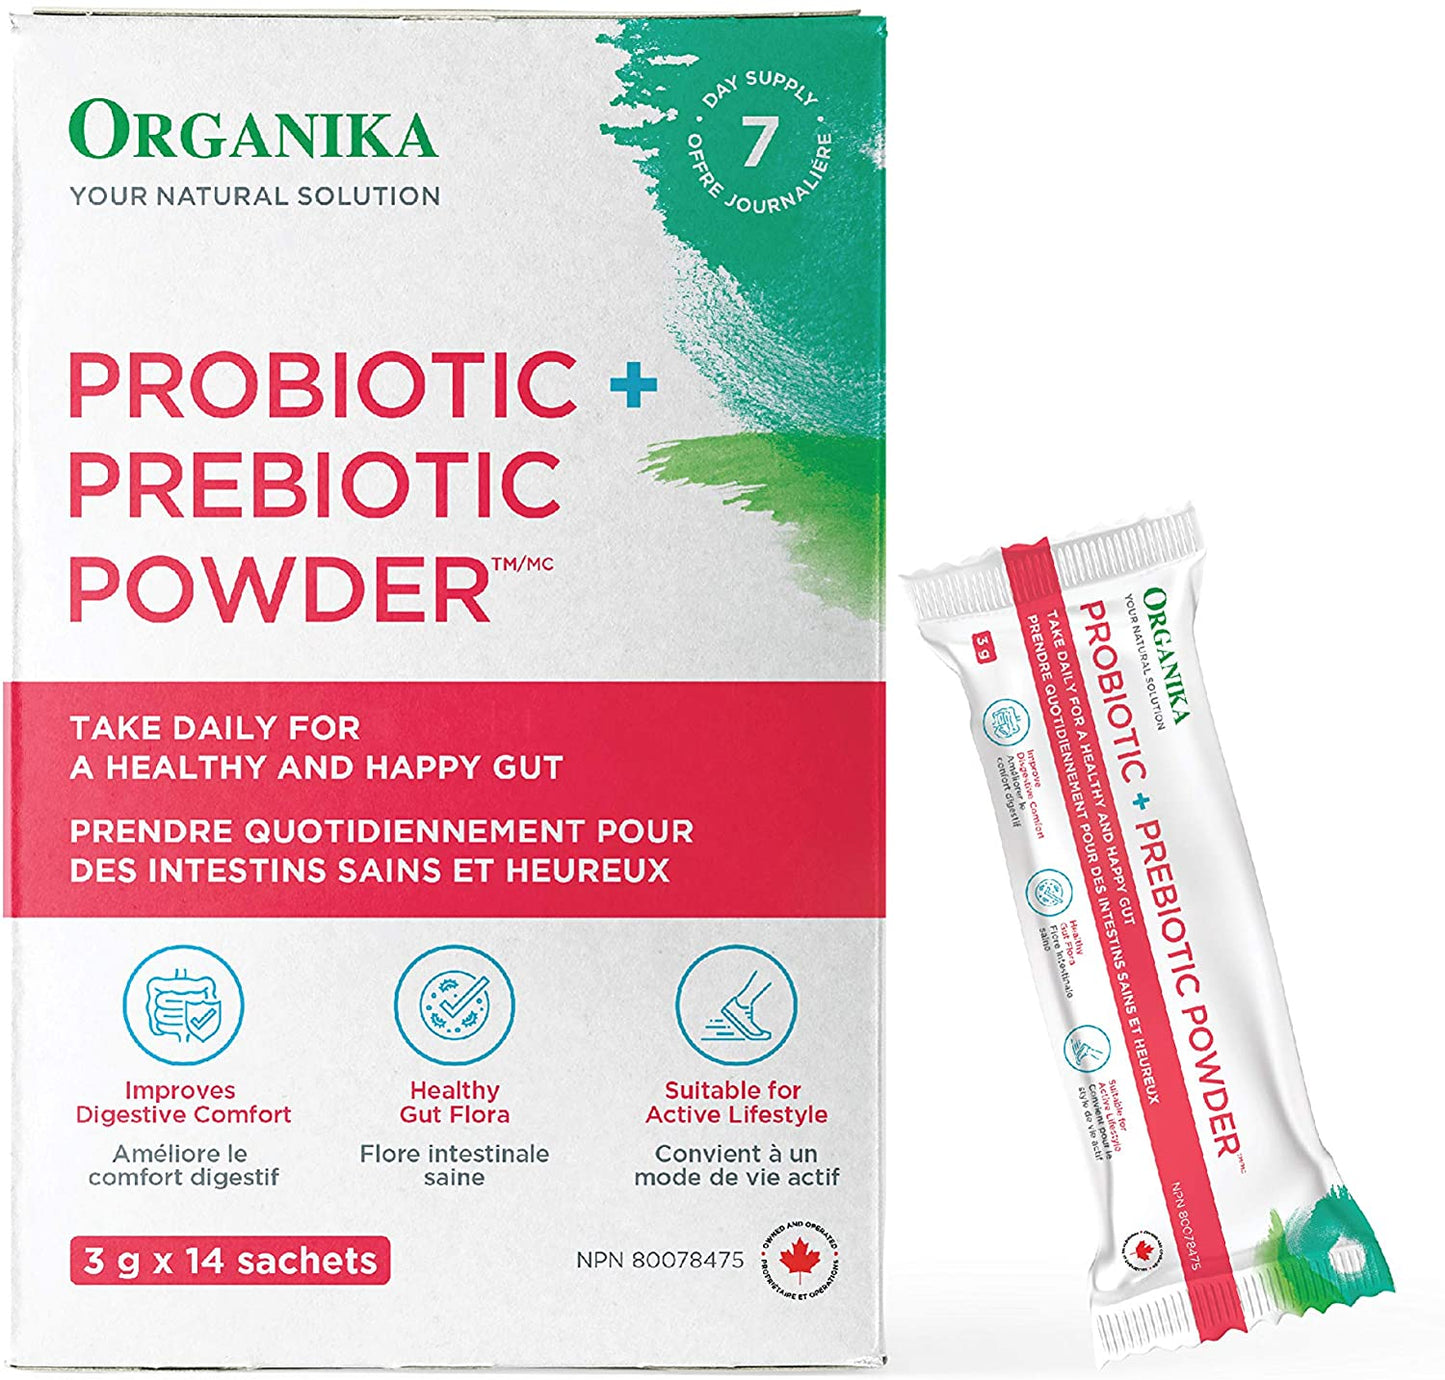 Probiotic + prebiotic powder